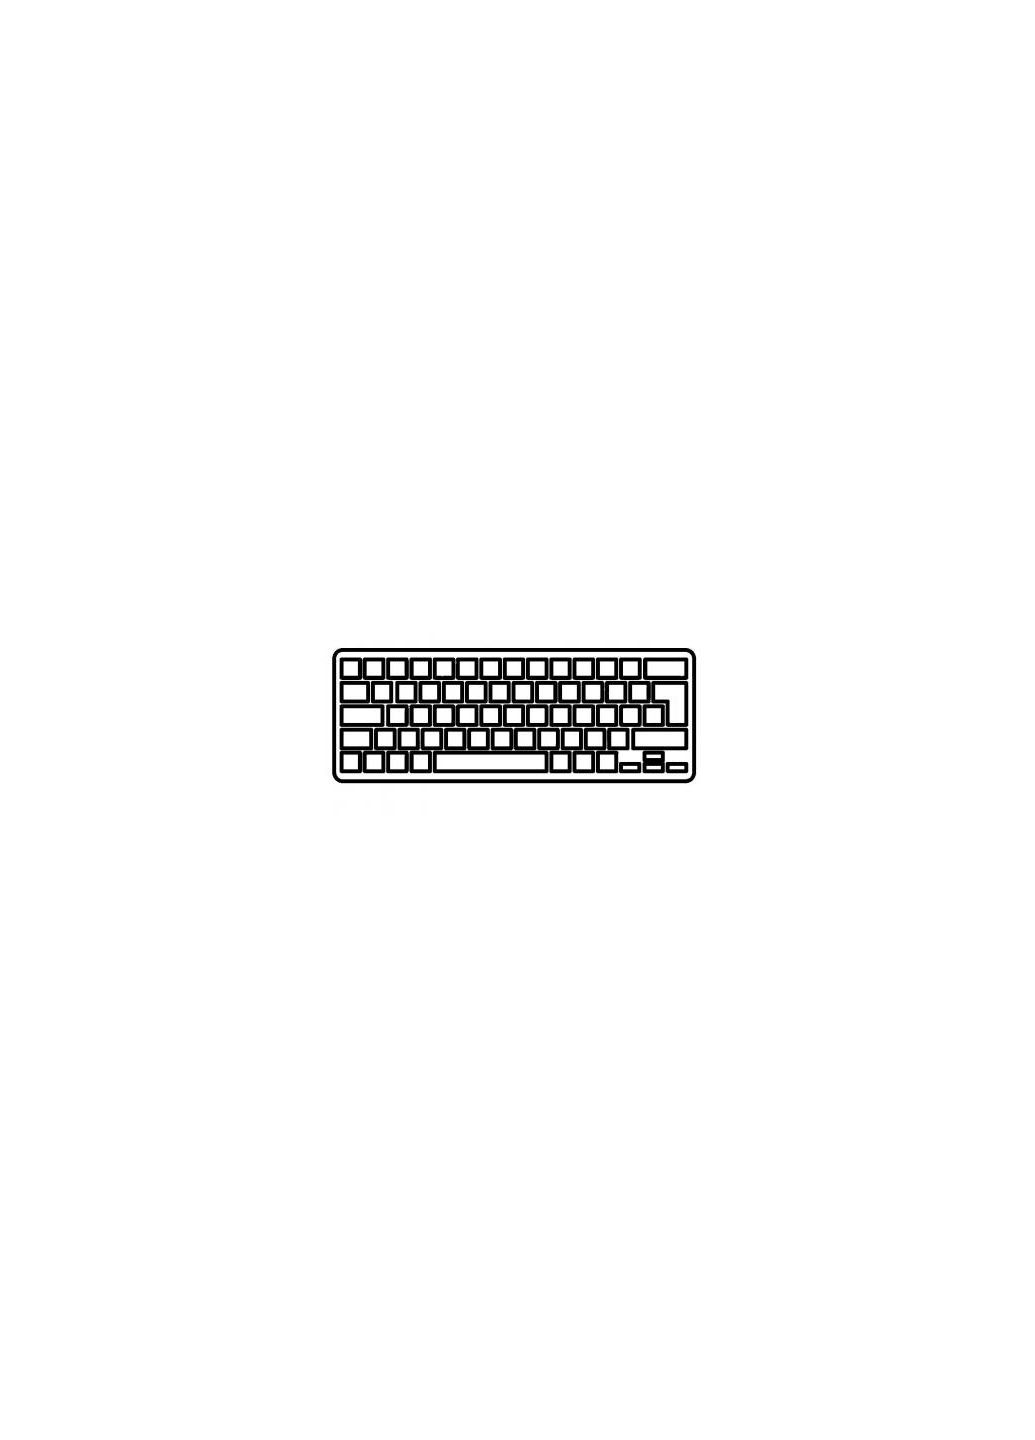 Клавиатура ноутбука Inspiron 143000/5447/5445/7447 Series black,wo/frame,UA/US (A46022) Dell inspiron 14-3000/5447/5445/7447 series black, wo/fr (276708010)